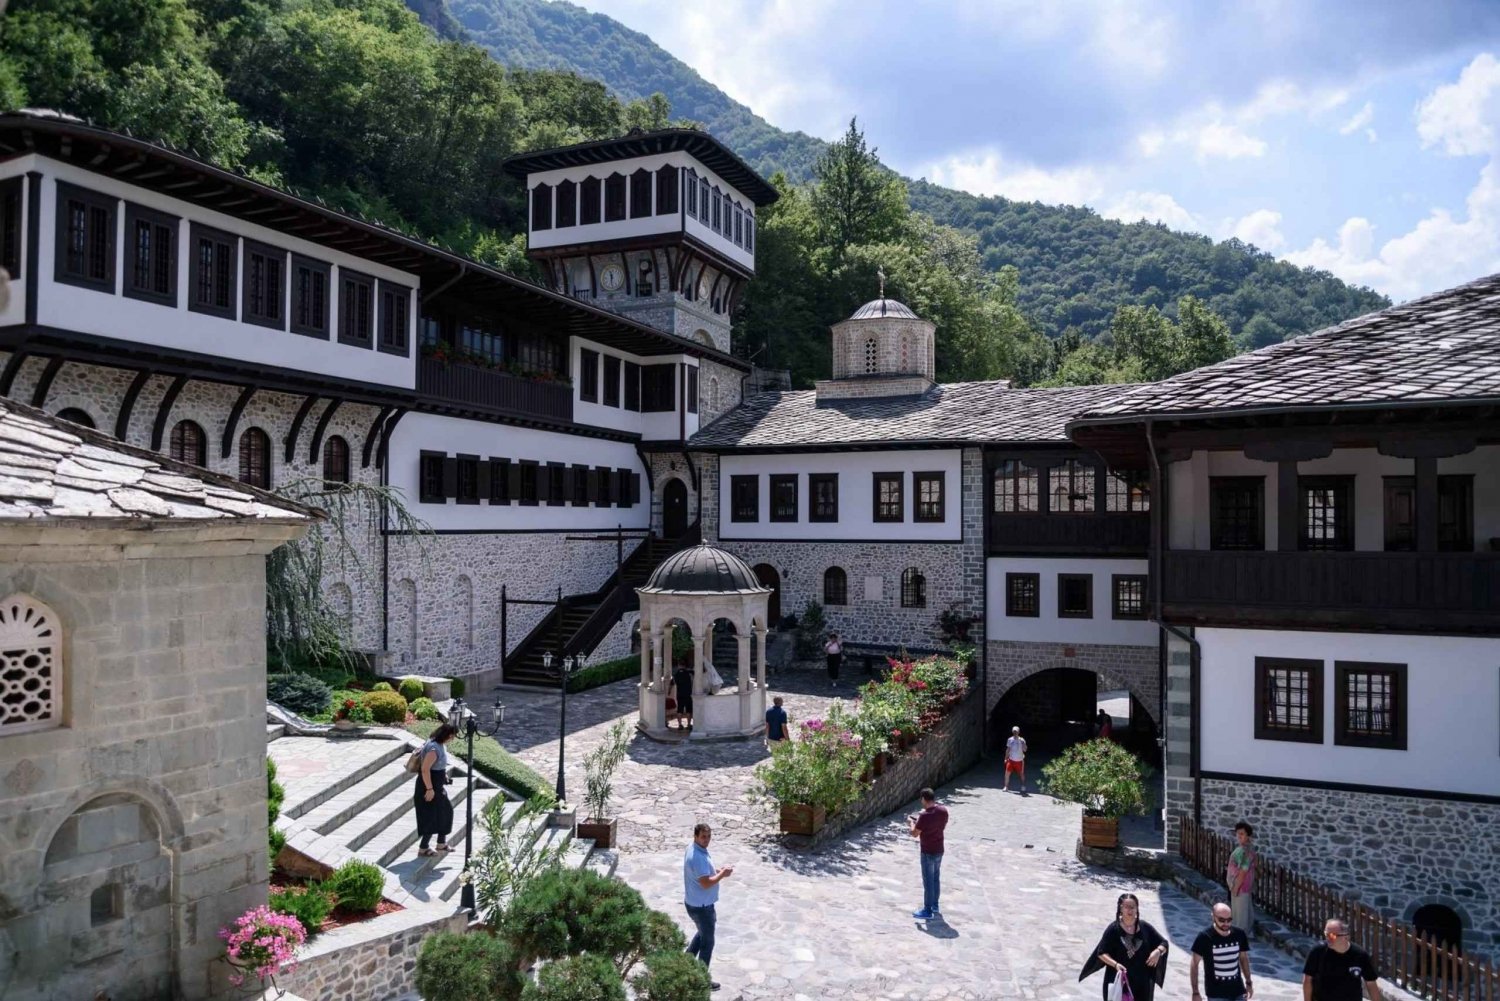 Bigorski-klosteret og Duff-vandfaldene fra Ohrid